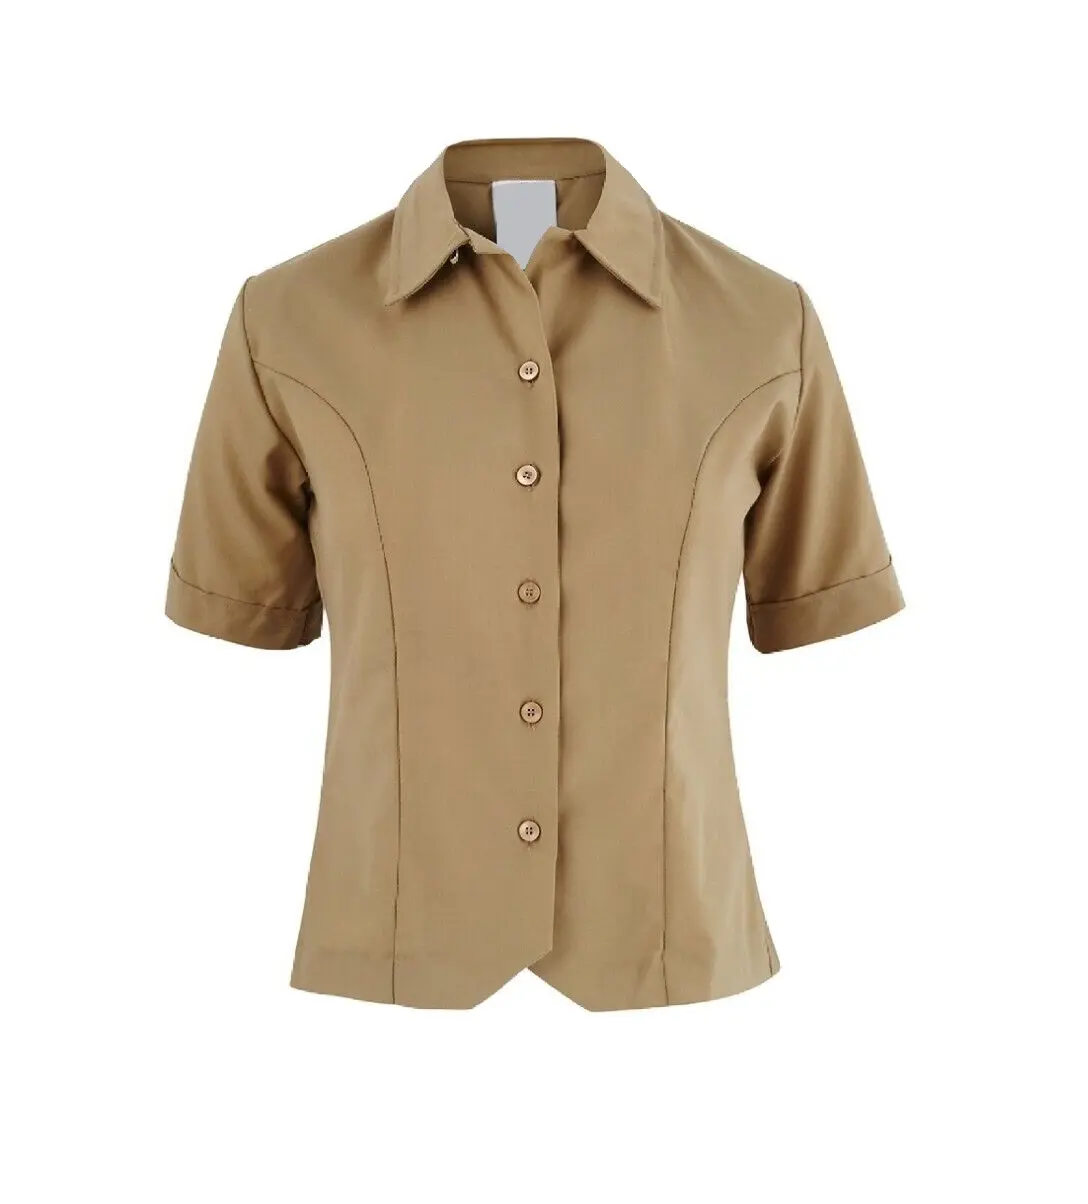 Рубашка цвета хаки с коротким рукавом женская официантка Рабочая форма простая Рабочая форма для чистки